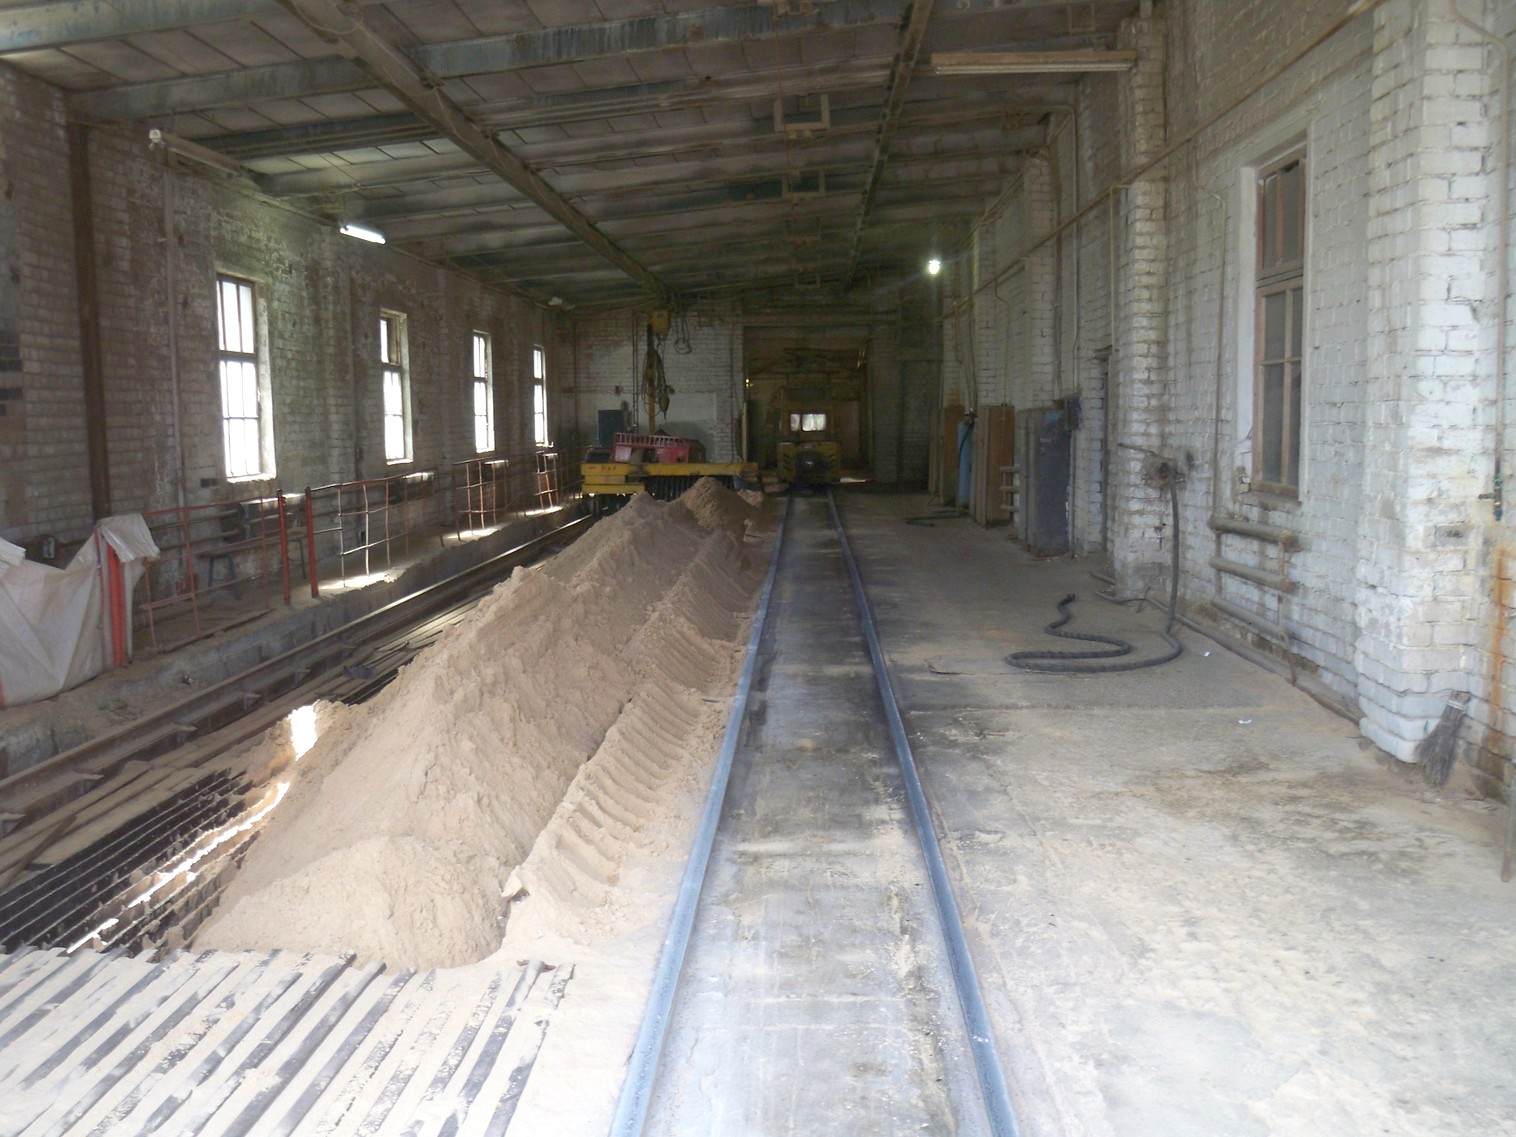 Узкоколейная железная дорога  Тверского комбината строительных материалов №2 — фотографии, сделанные в 2013 году (часть 2)